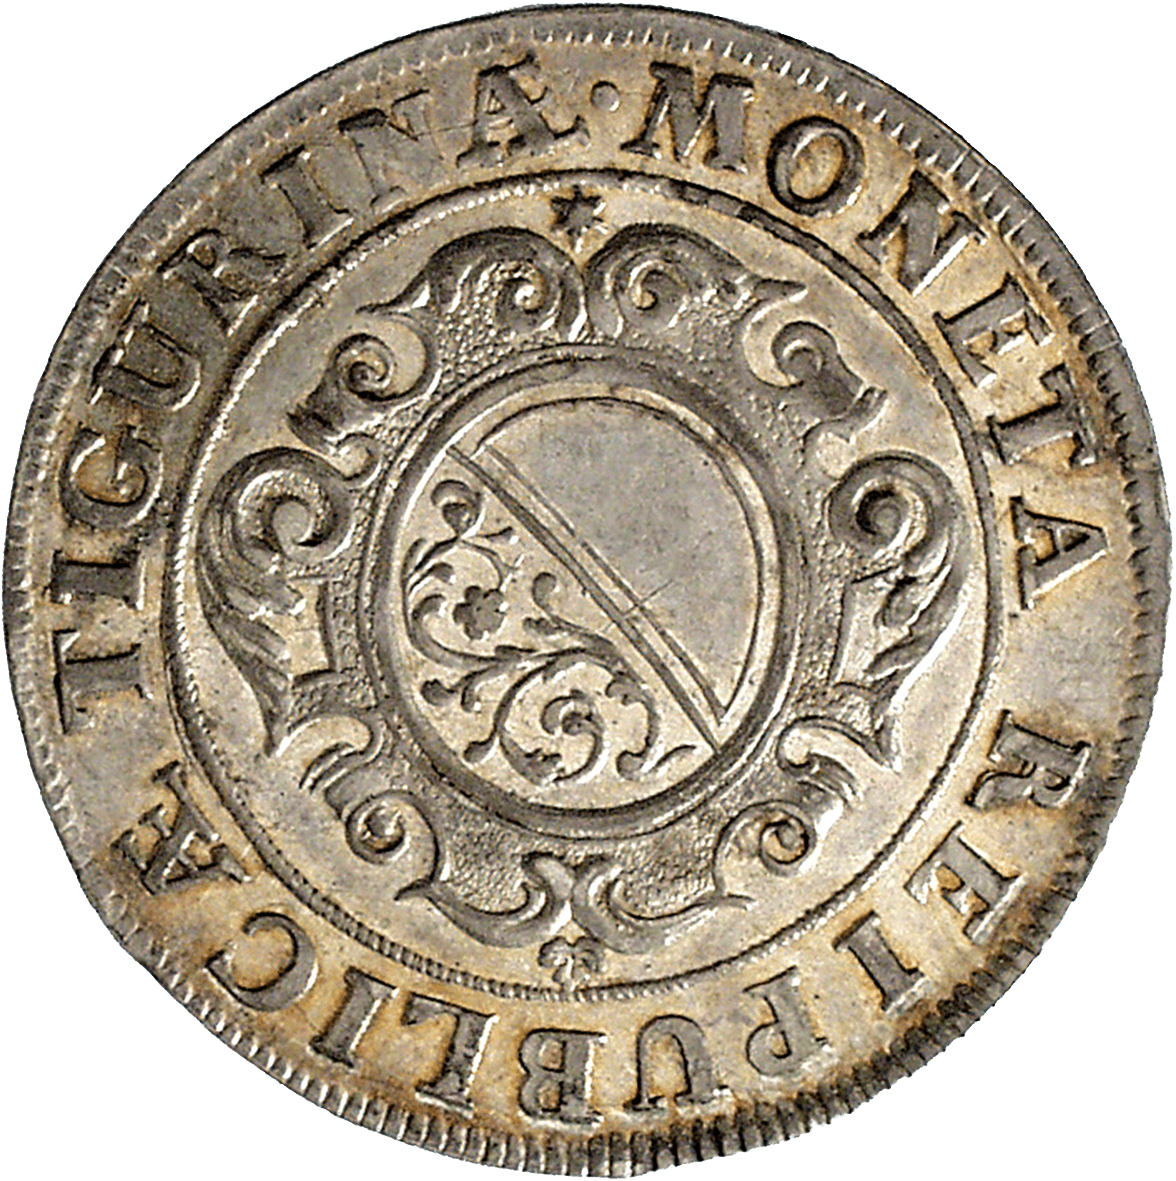 Republic of Zurich, 20 Schillings 1714 (obverse)